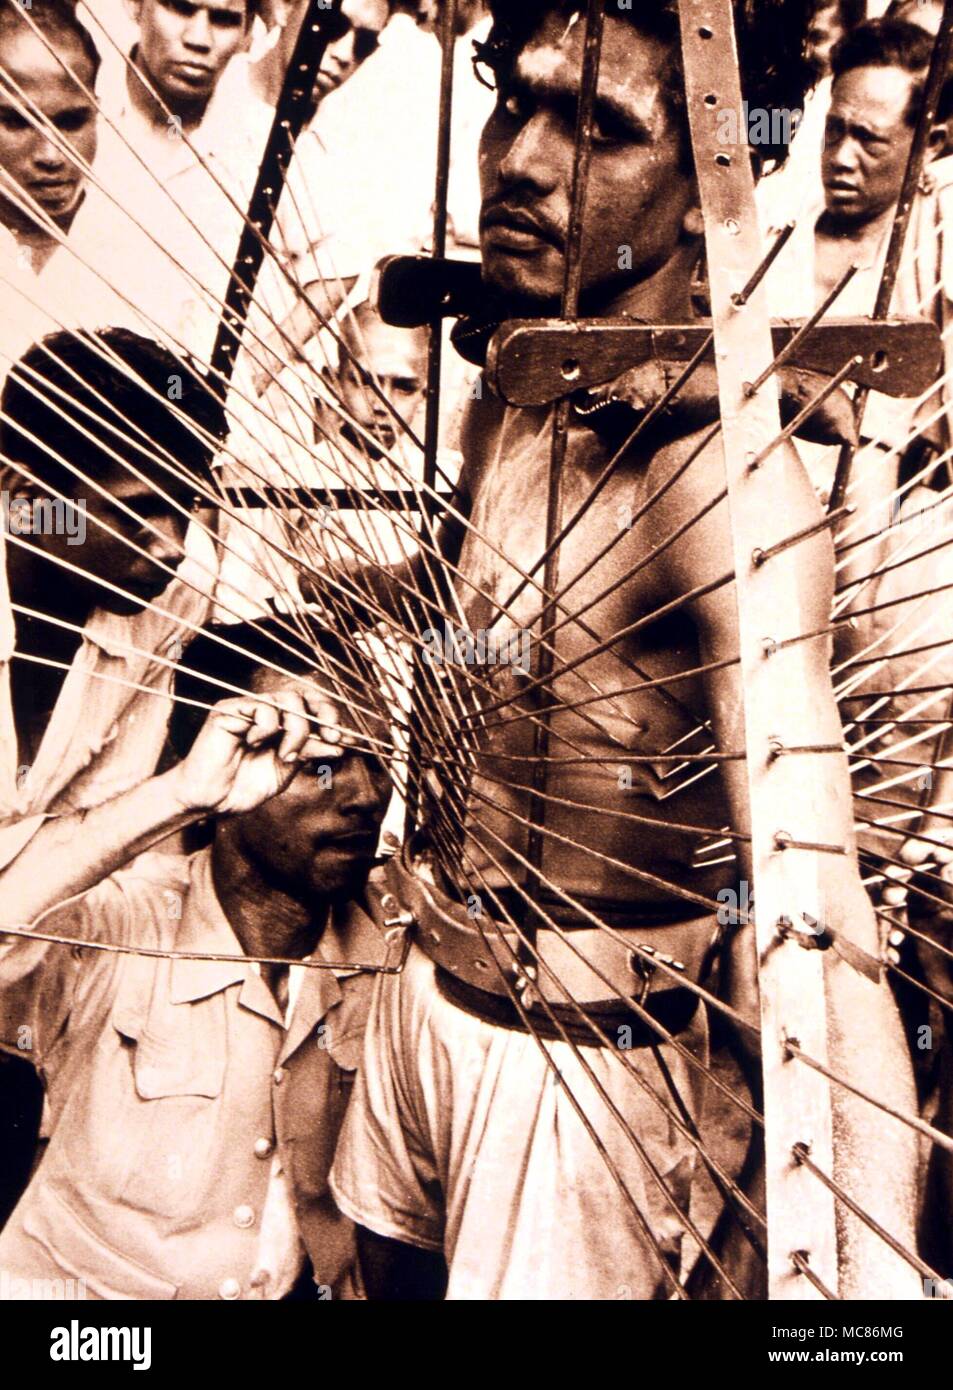 Die Teilnehmer der Hindu Festival der Thaipusam, in Singapur statt. In Trance, der Mann ist eigenständig und mit Spießen verstümmelt. Später, gibt es keine Spur von Wunden. Photo Credit: Philip Daly Stockfoto